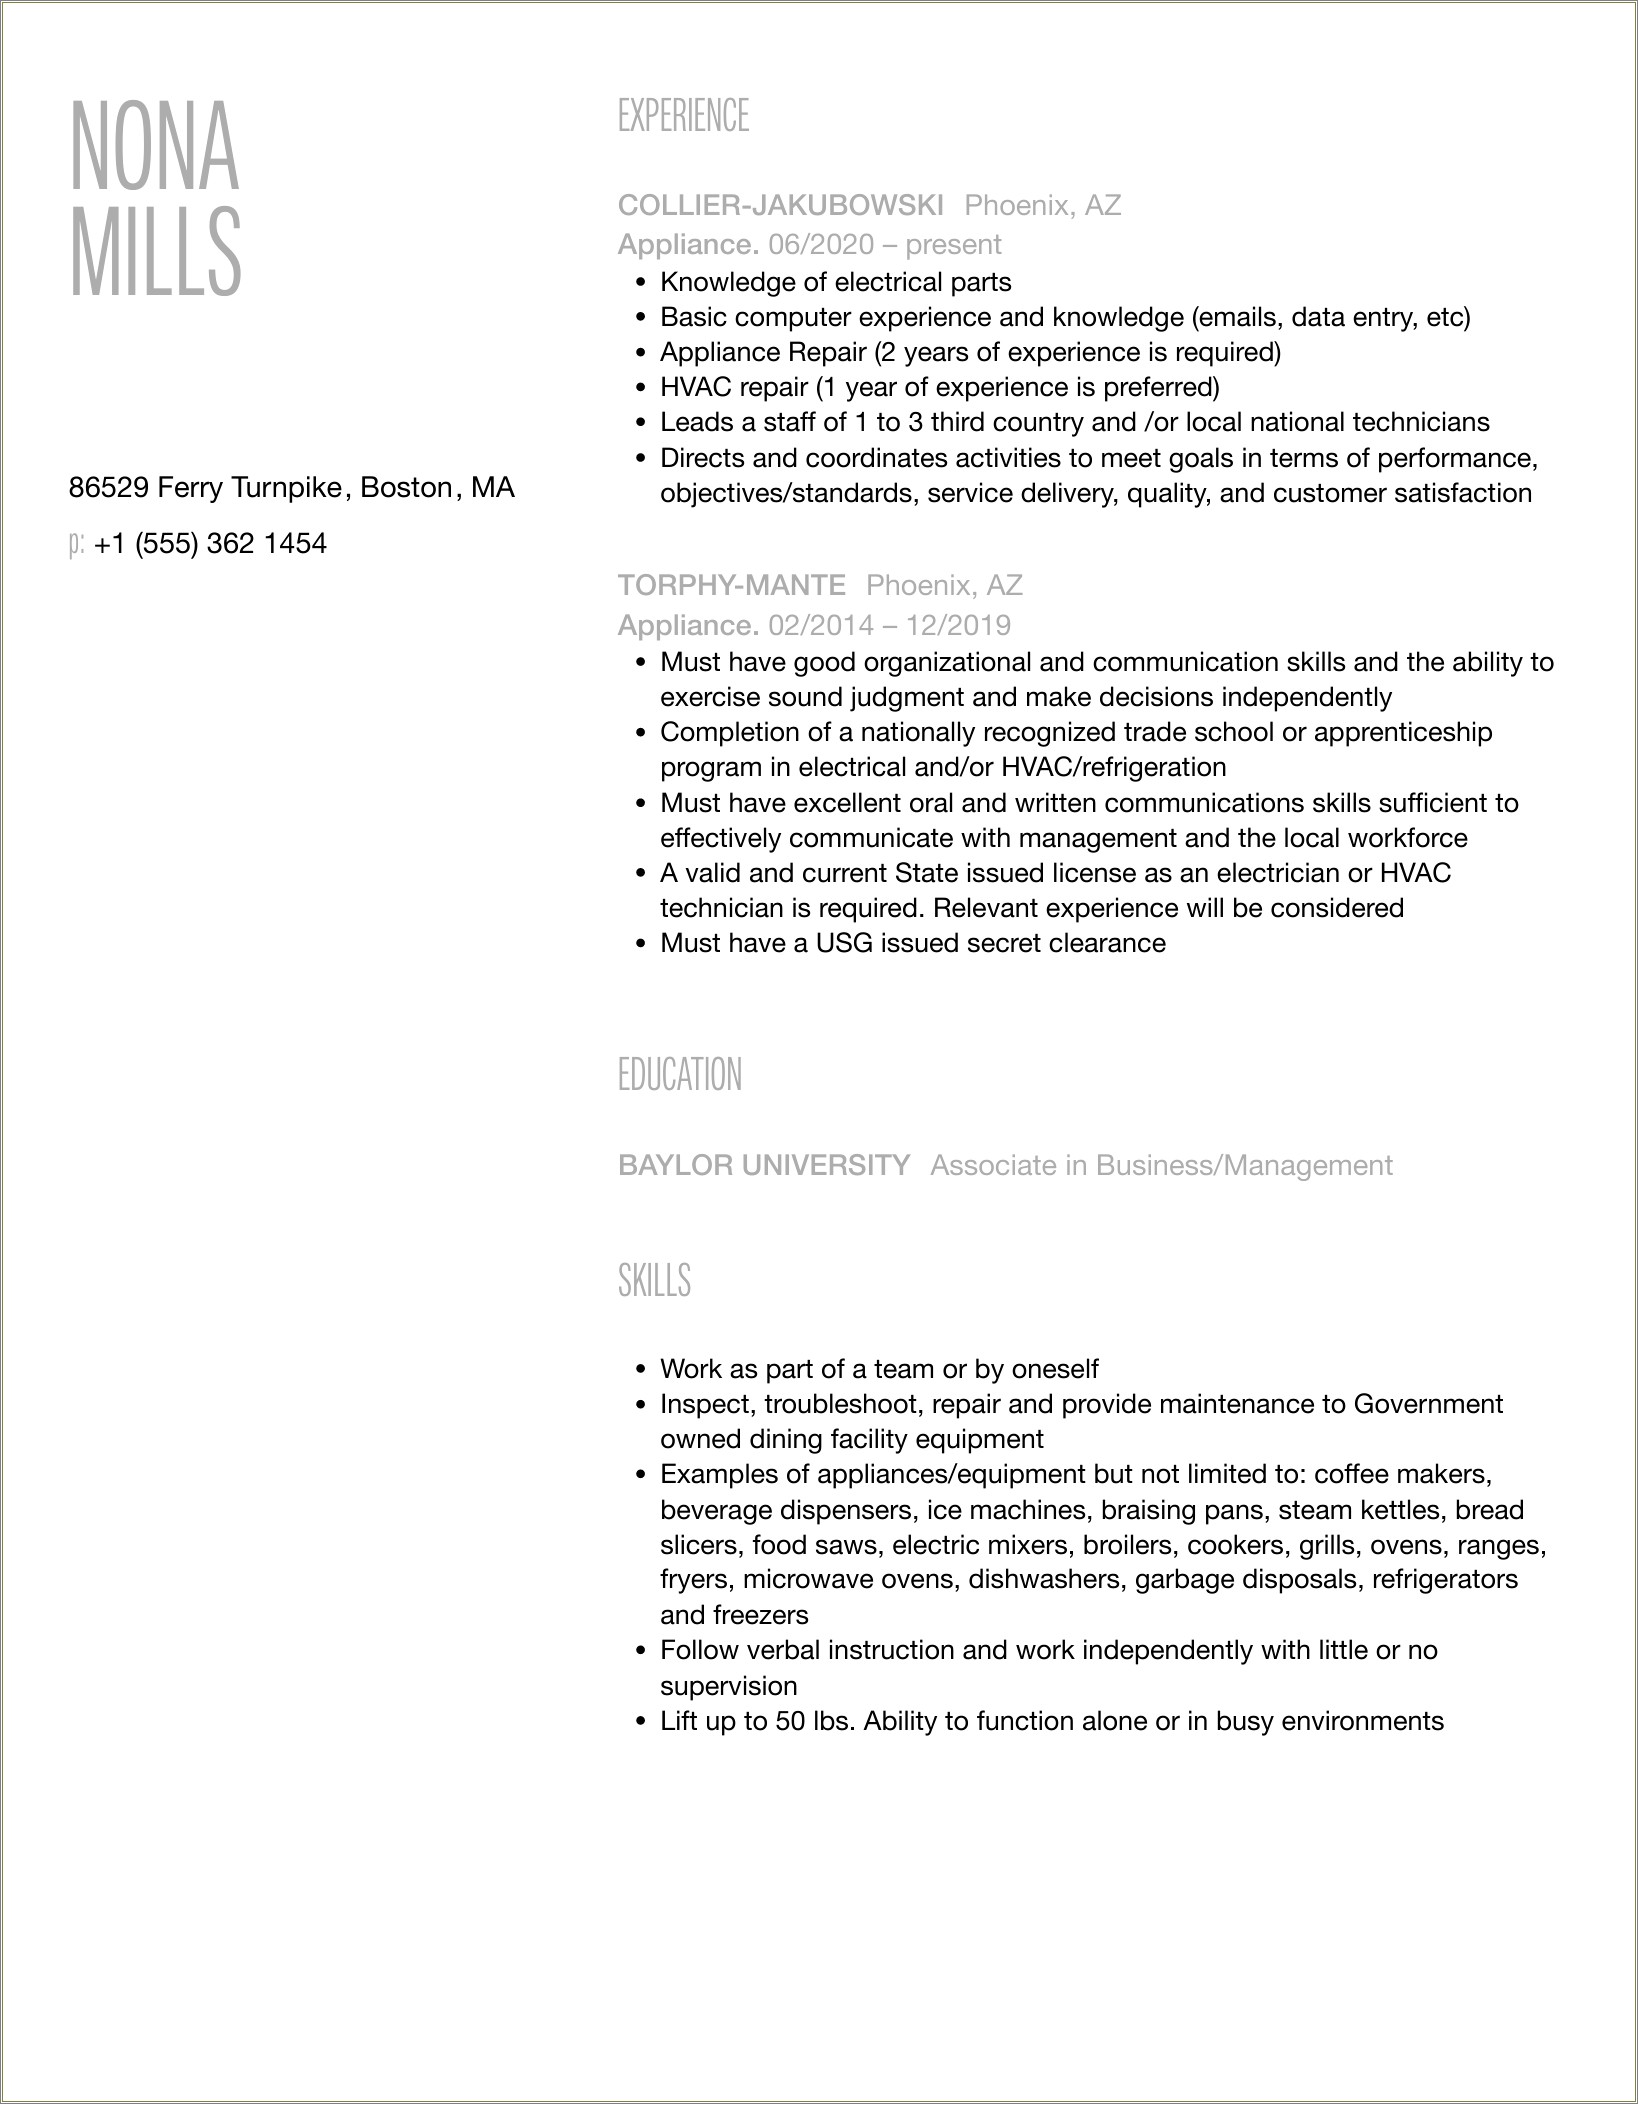 Appliance Installer Job Description For Resume